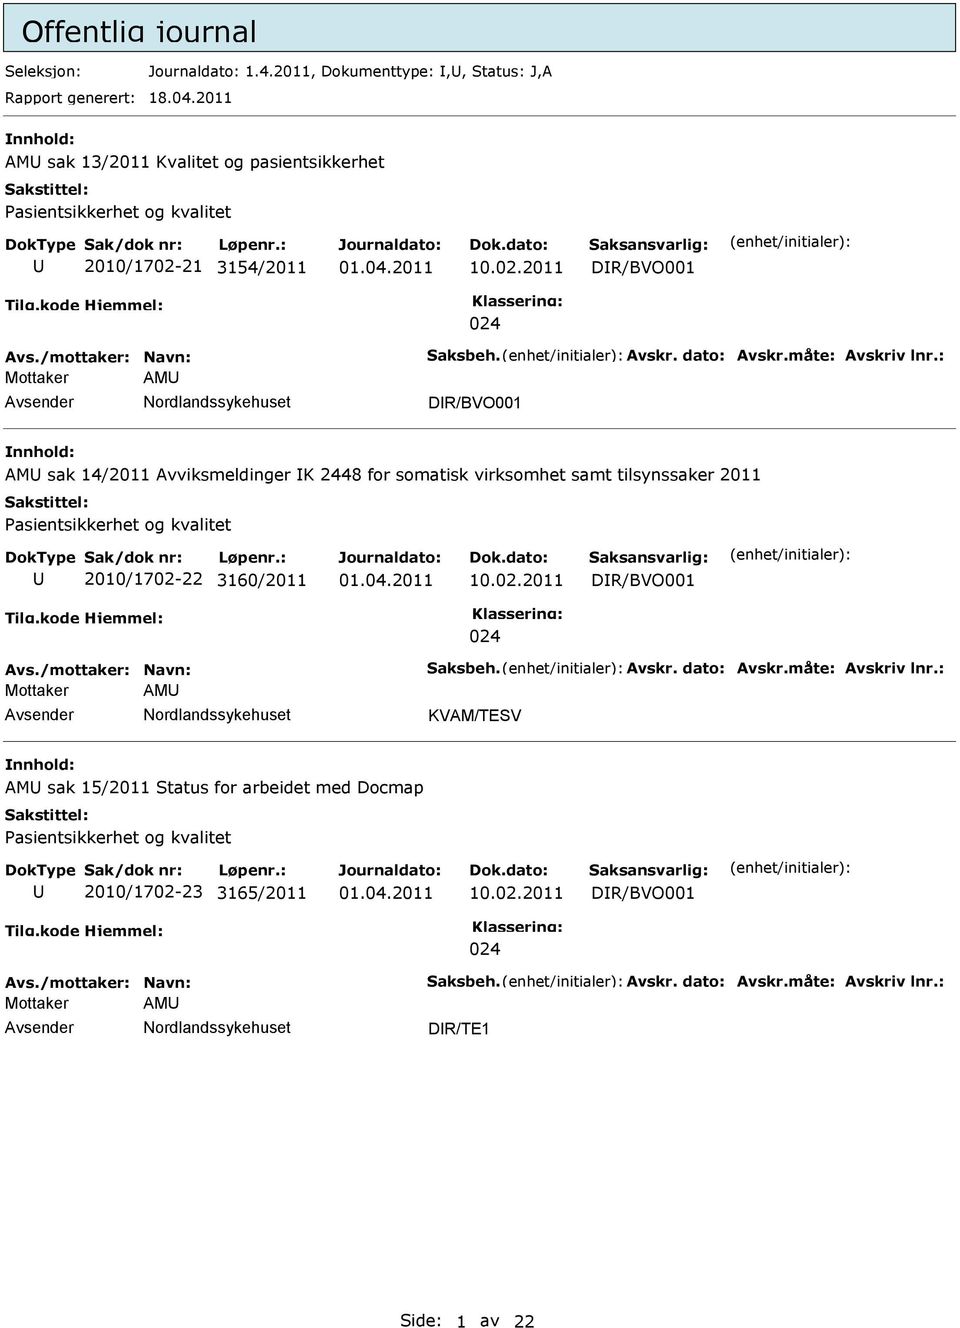 : Mottaker AM DR/BVO001 AM sak 14/2011 Avviksmeldinger K 2448 for somatisk virksomhet samt tilsynssaker 2011 asientsikkerhet og kvalitet 2010/1702-22 3160/2011 10.